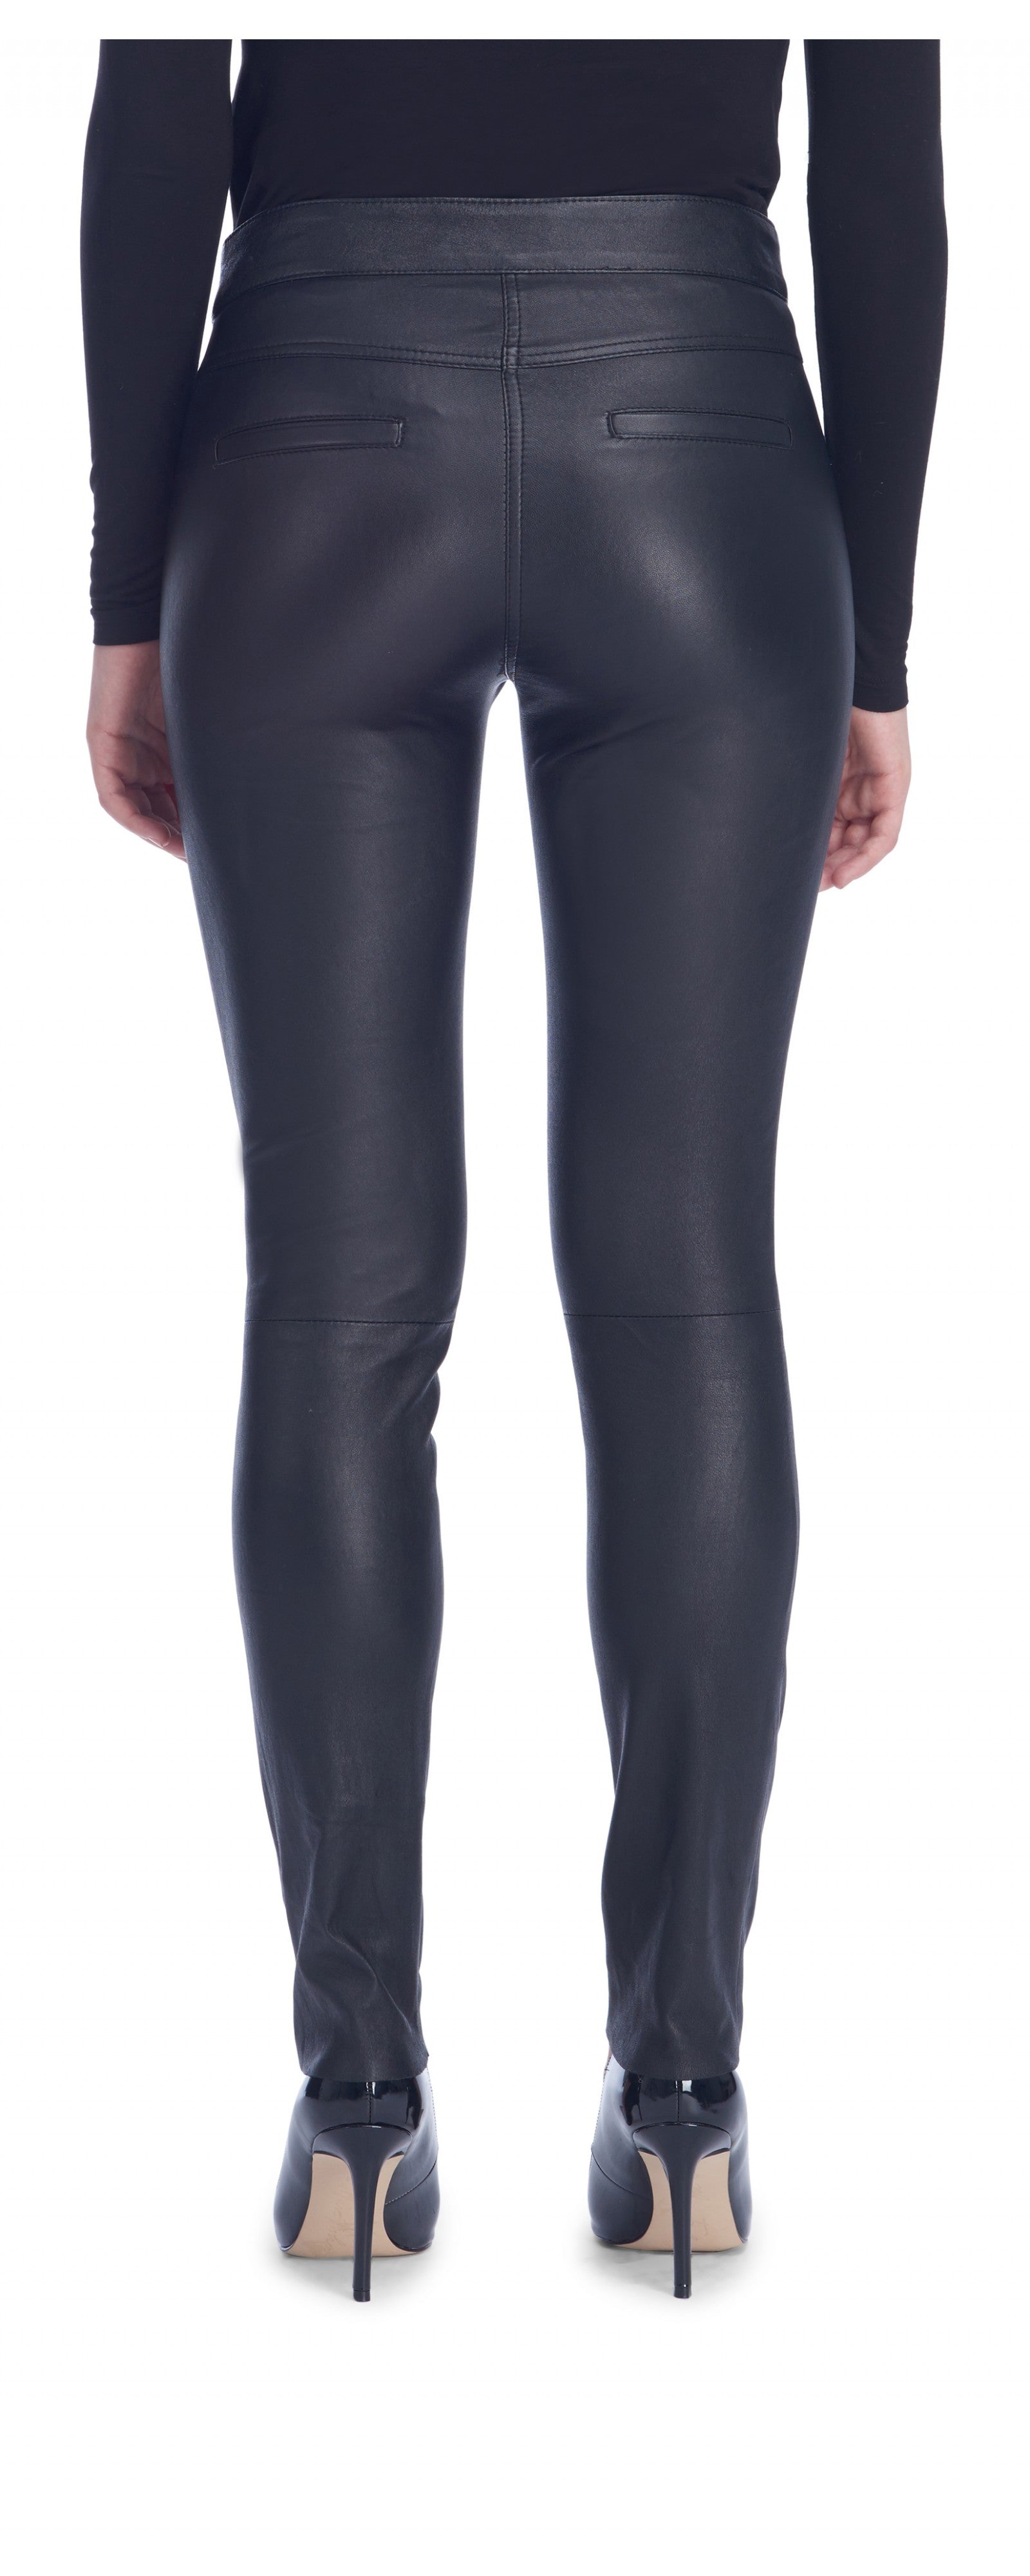 Faux leather pants thermal winter warm women's pants MW+Zipper white –  MWPants